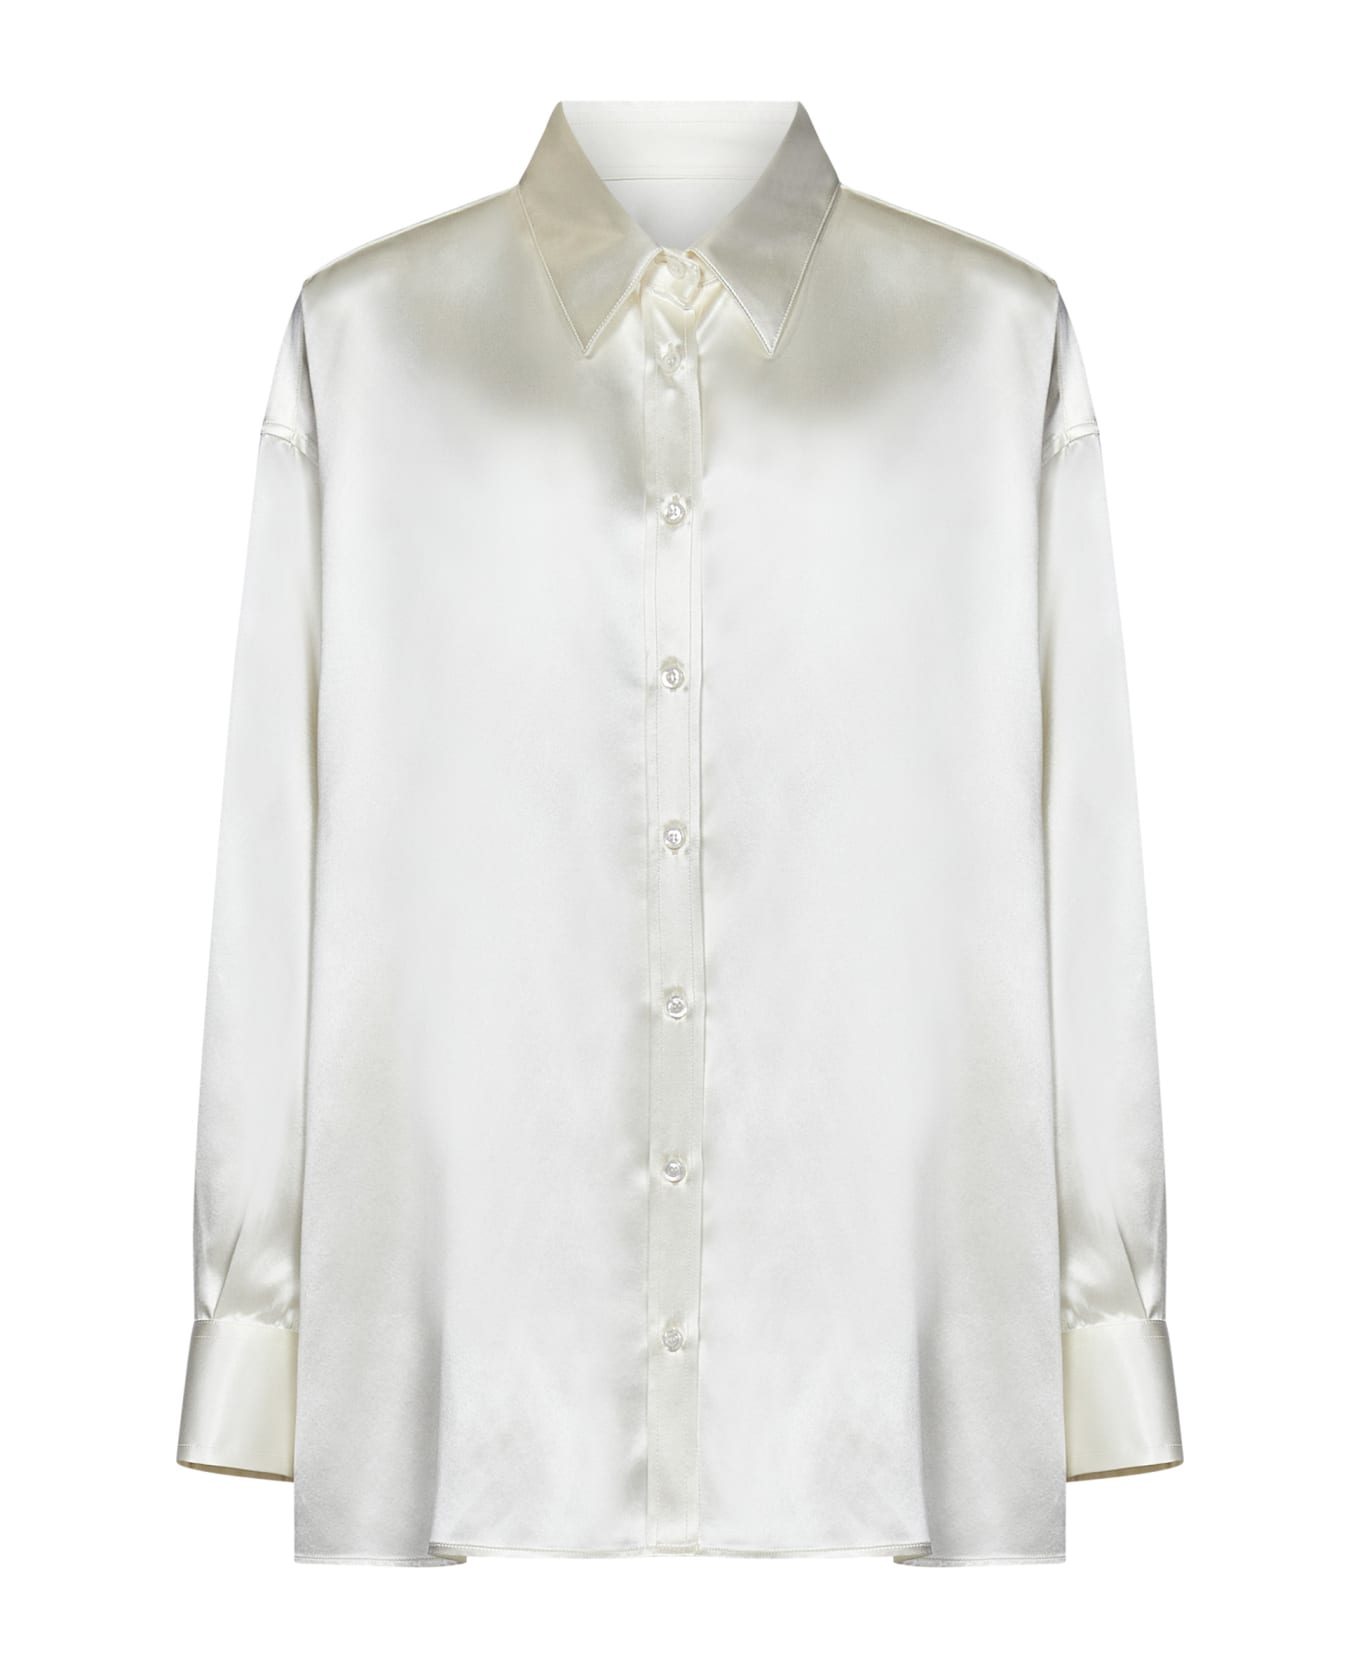 Armarium Leo Shirt - White シャツ